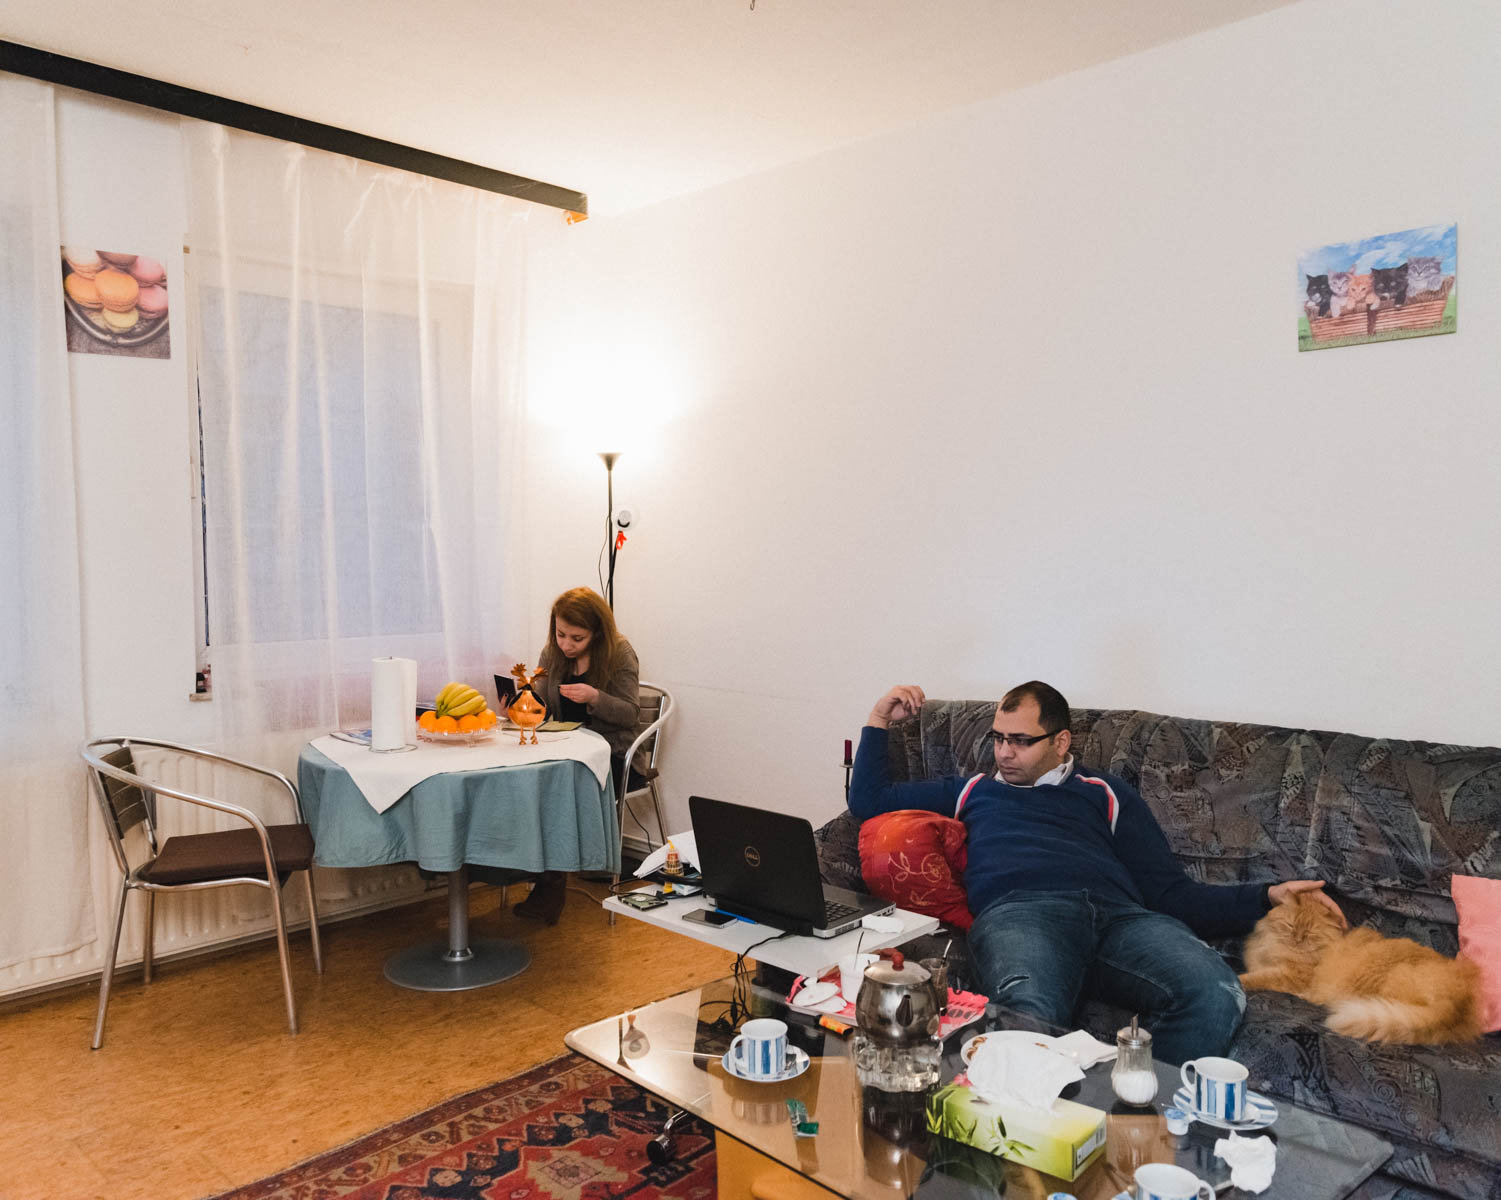 Ein Ehepaar in seinem Wohnzimmer: Aziz lümmelt mit dem Laptop auf der Couch, neben ihm liegt ein Kater. Lama sitzt am Tisch (Foto: Christian Protte)